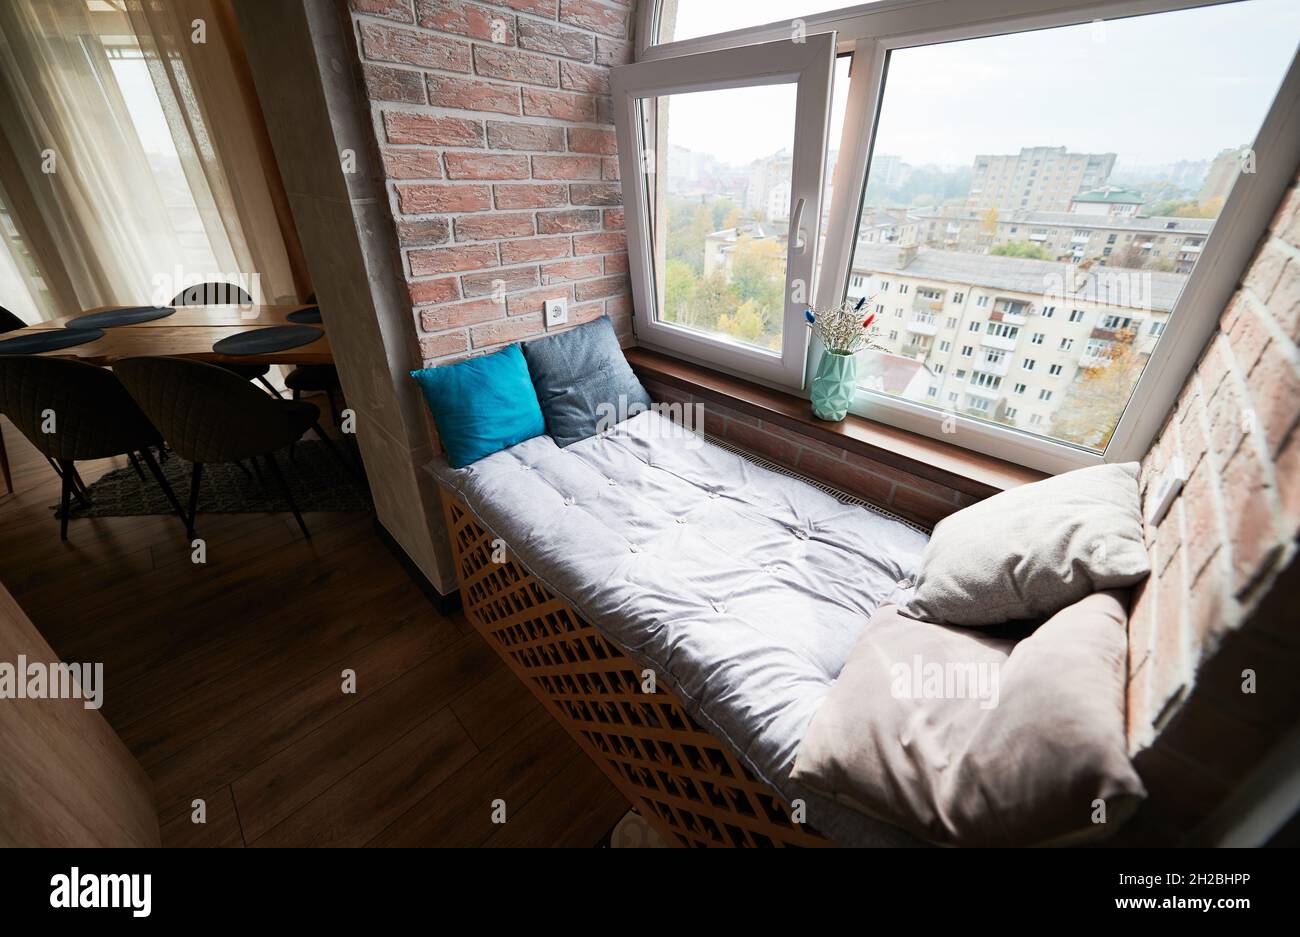 Vue sur le confortable lit avec rebord de fenêtre dans la loggia.Design de  l'appartement moderne avec place de couchage sur le seuil de la fenêtre et  parquet.Concept de style loft Photo Stock -